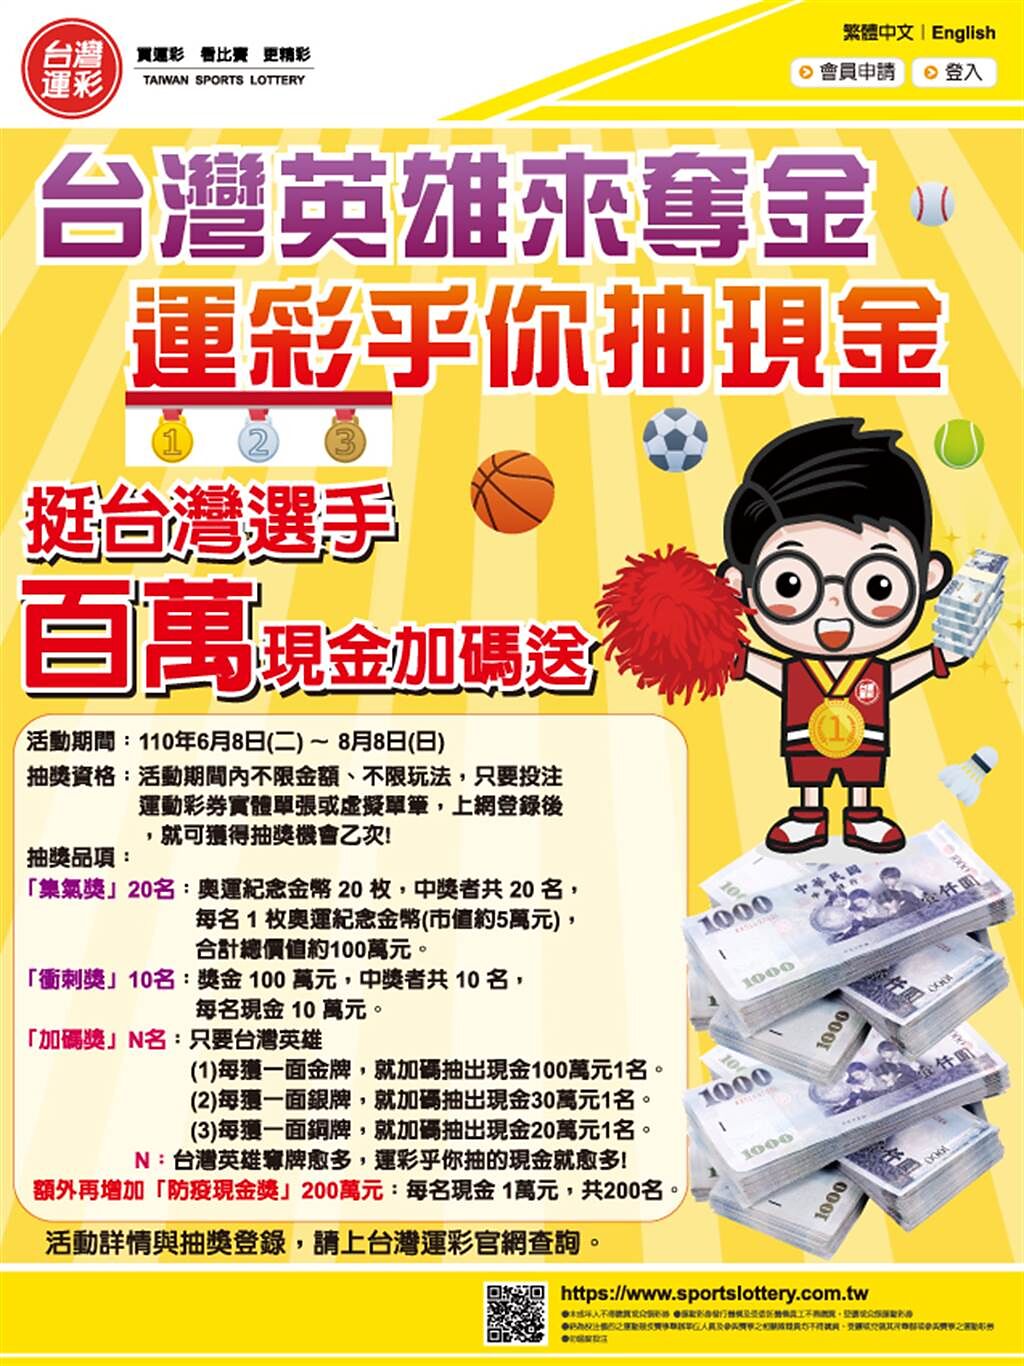 台灣運彩在東京奧運期間推出加碼活動「台灣英雄來奪金 運彩乎你抽現金」。 （台灣運彩提供）